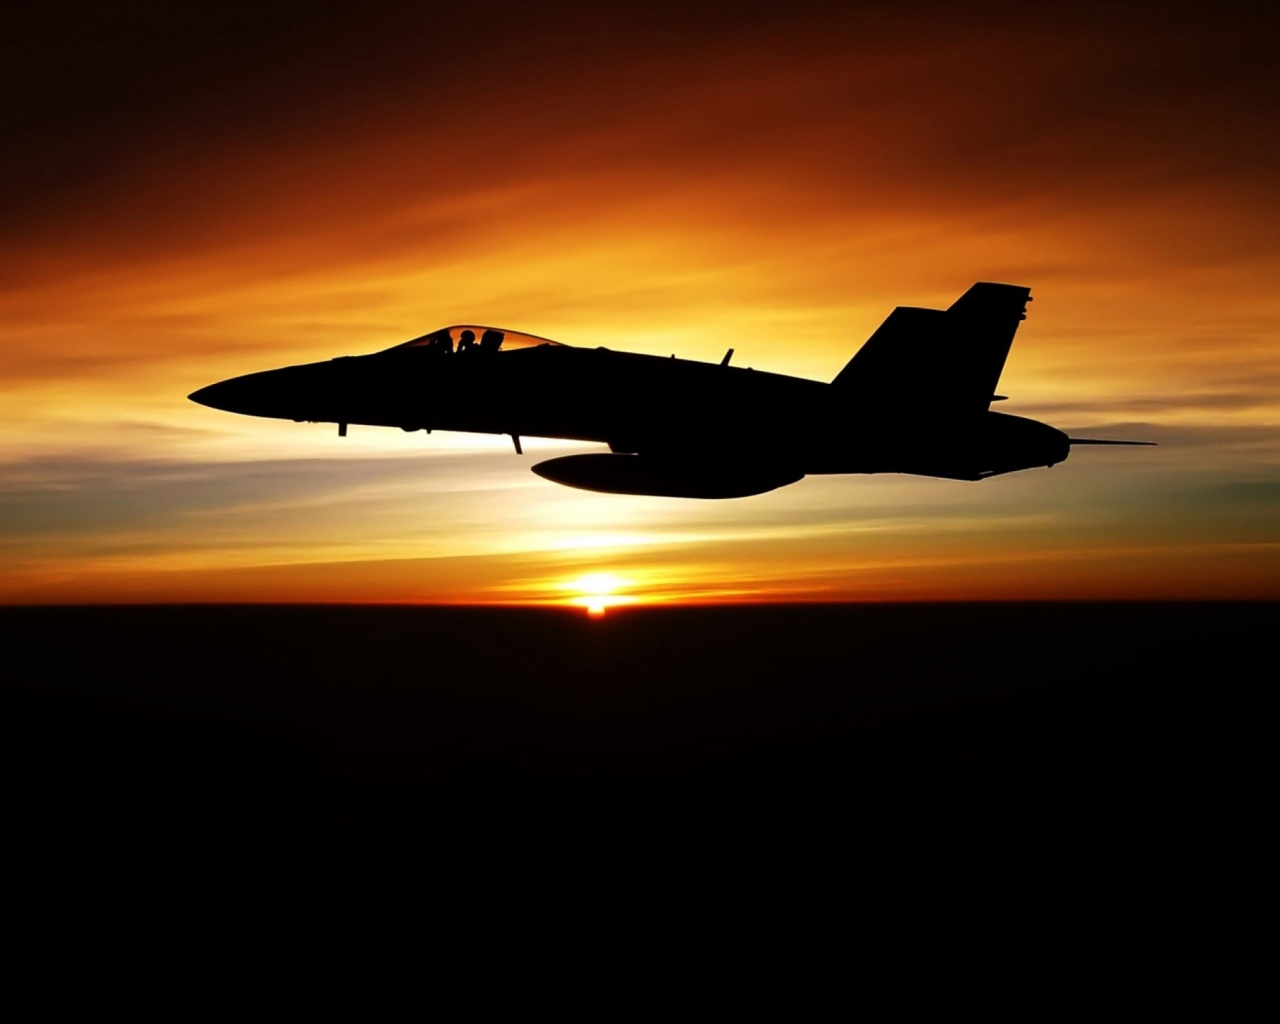 Fighter Flying In Dusk Sky